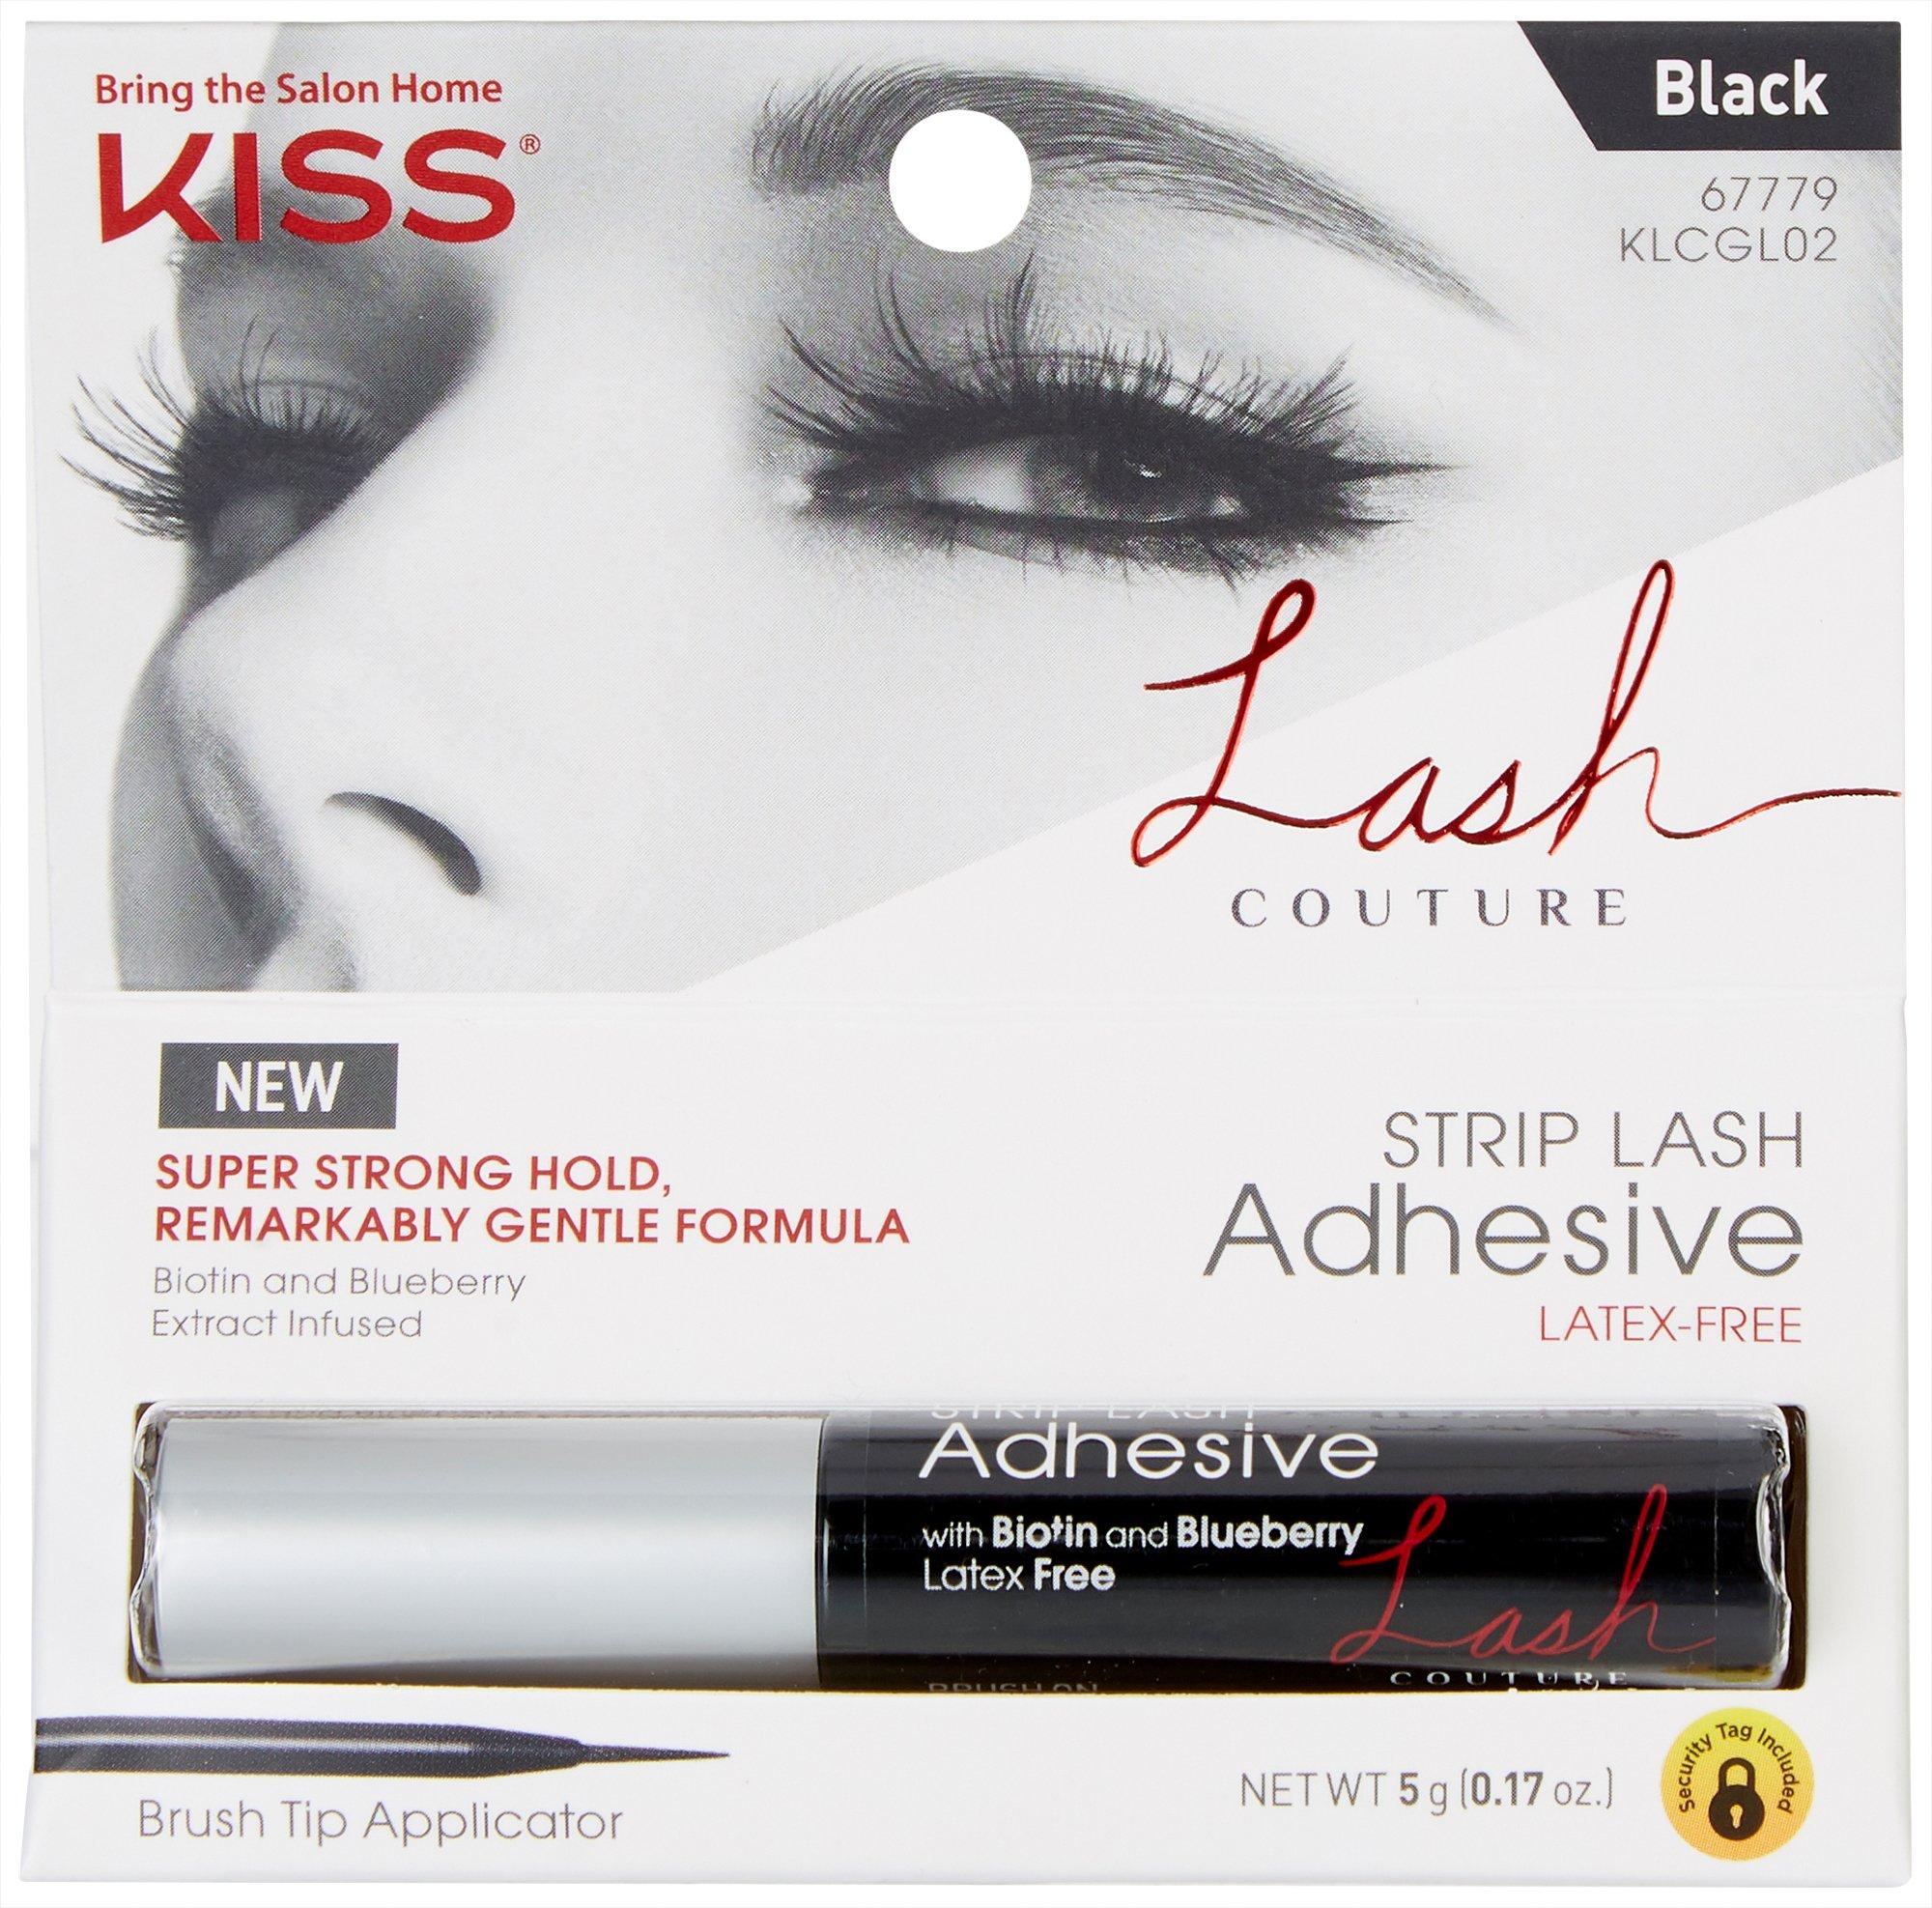 Strip Lash Adhesive Latex Free Brush On Eyelash Glue